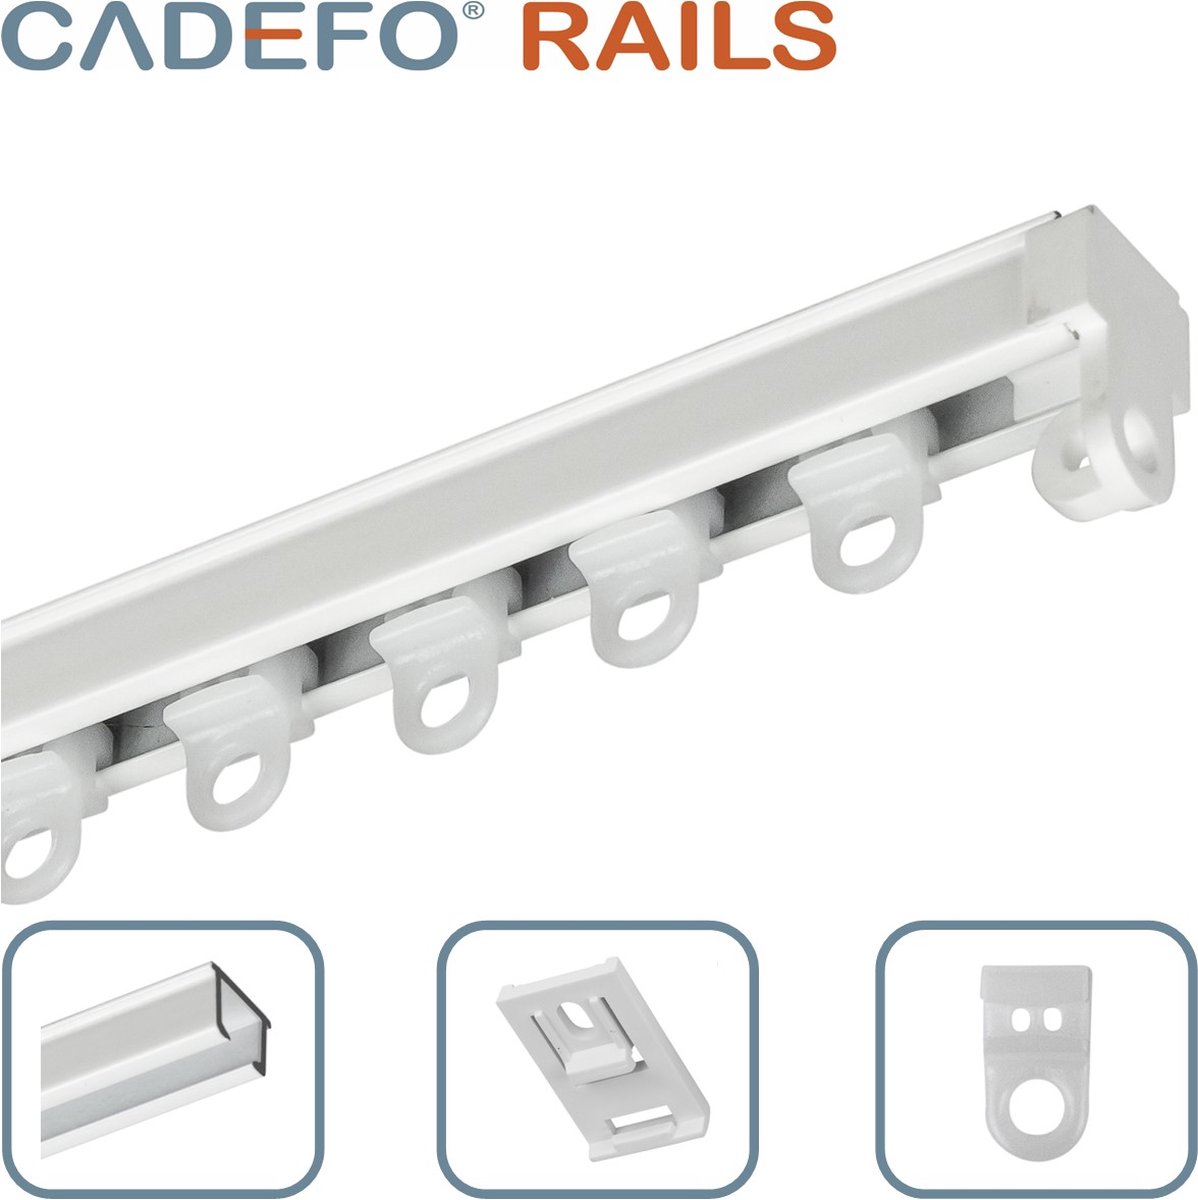 CADEFO RAILS (451 - 500 cm) Gordijnrails - Compleet op maat! - UIT 1 STUK - Leverbaar tot 6 meter - Plafondbevestiging - Lengte 477 cm